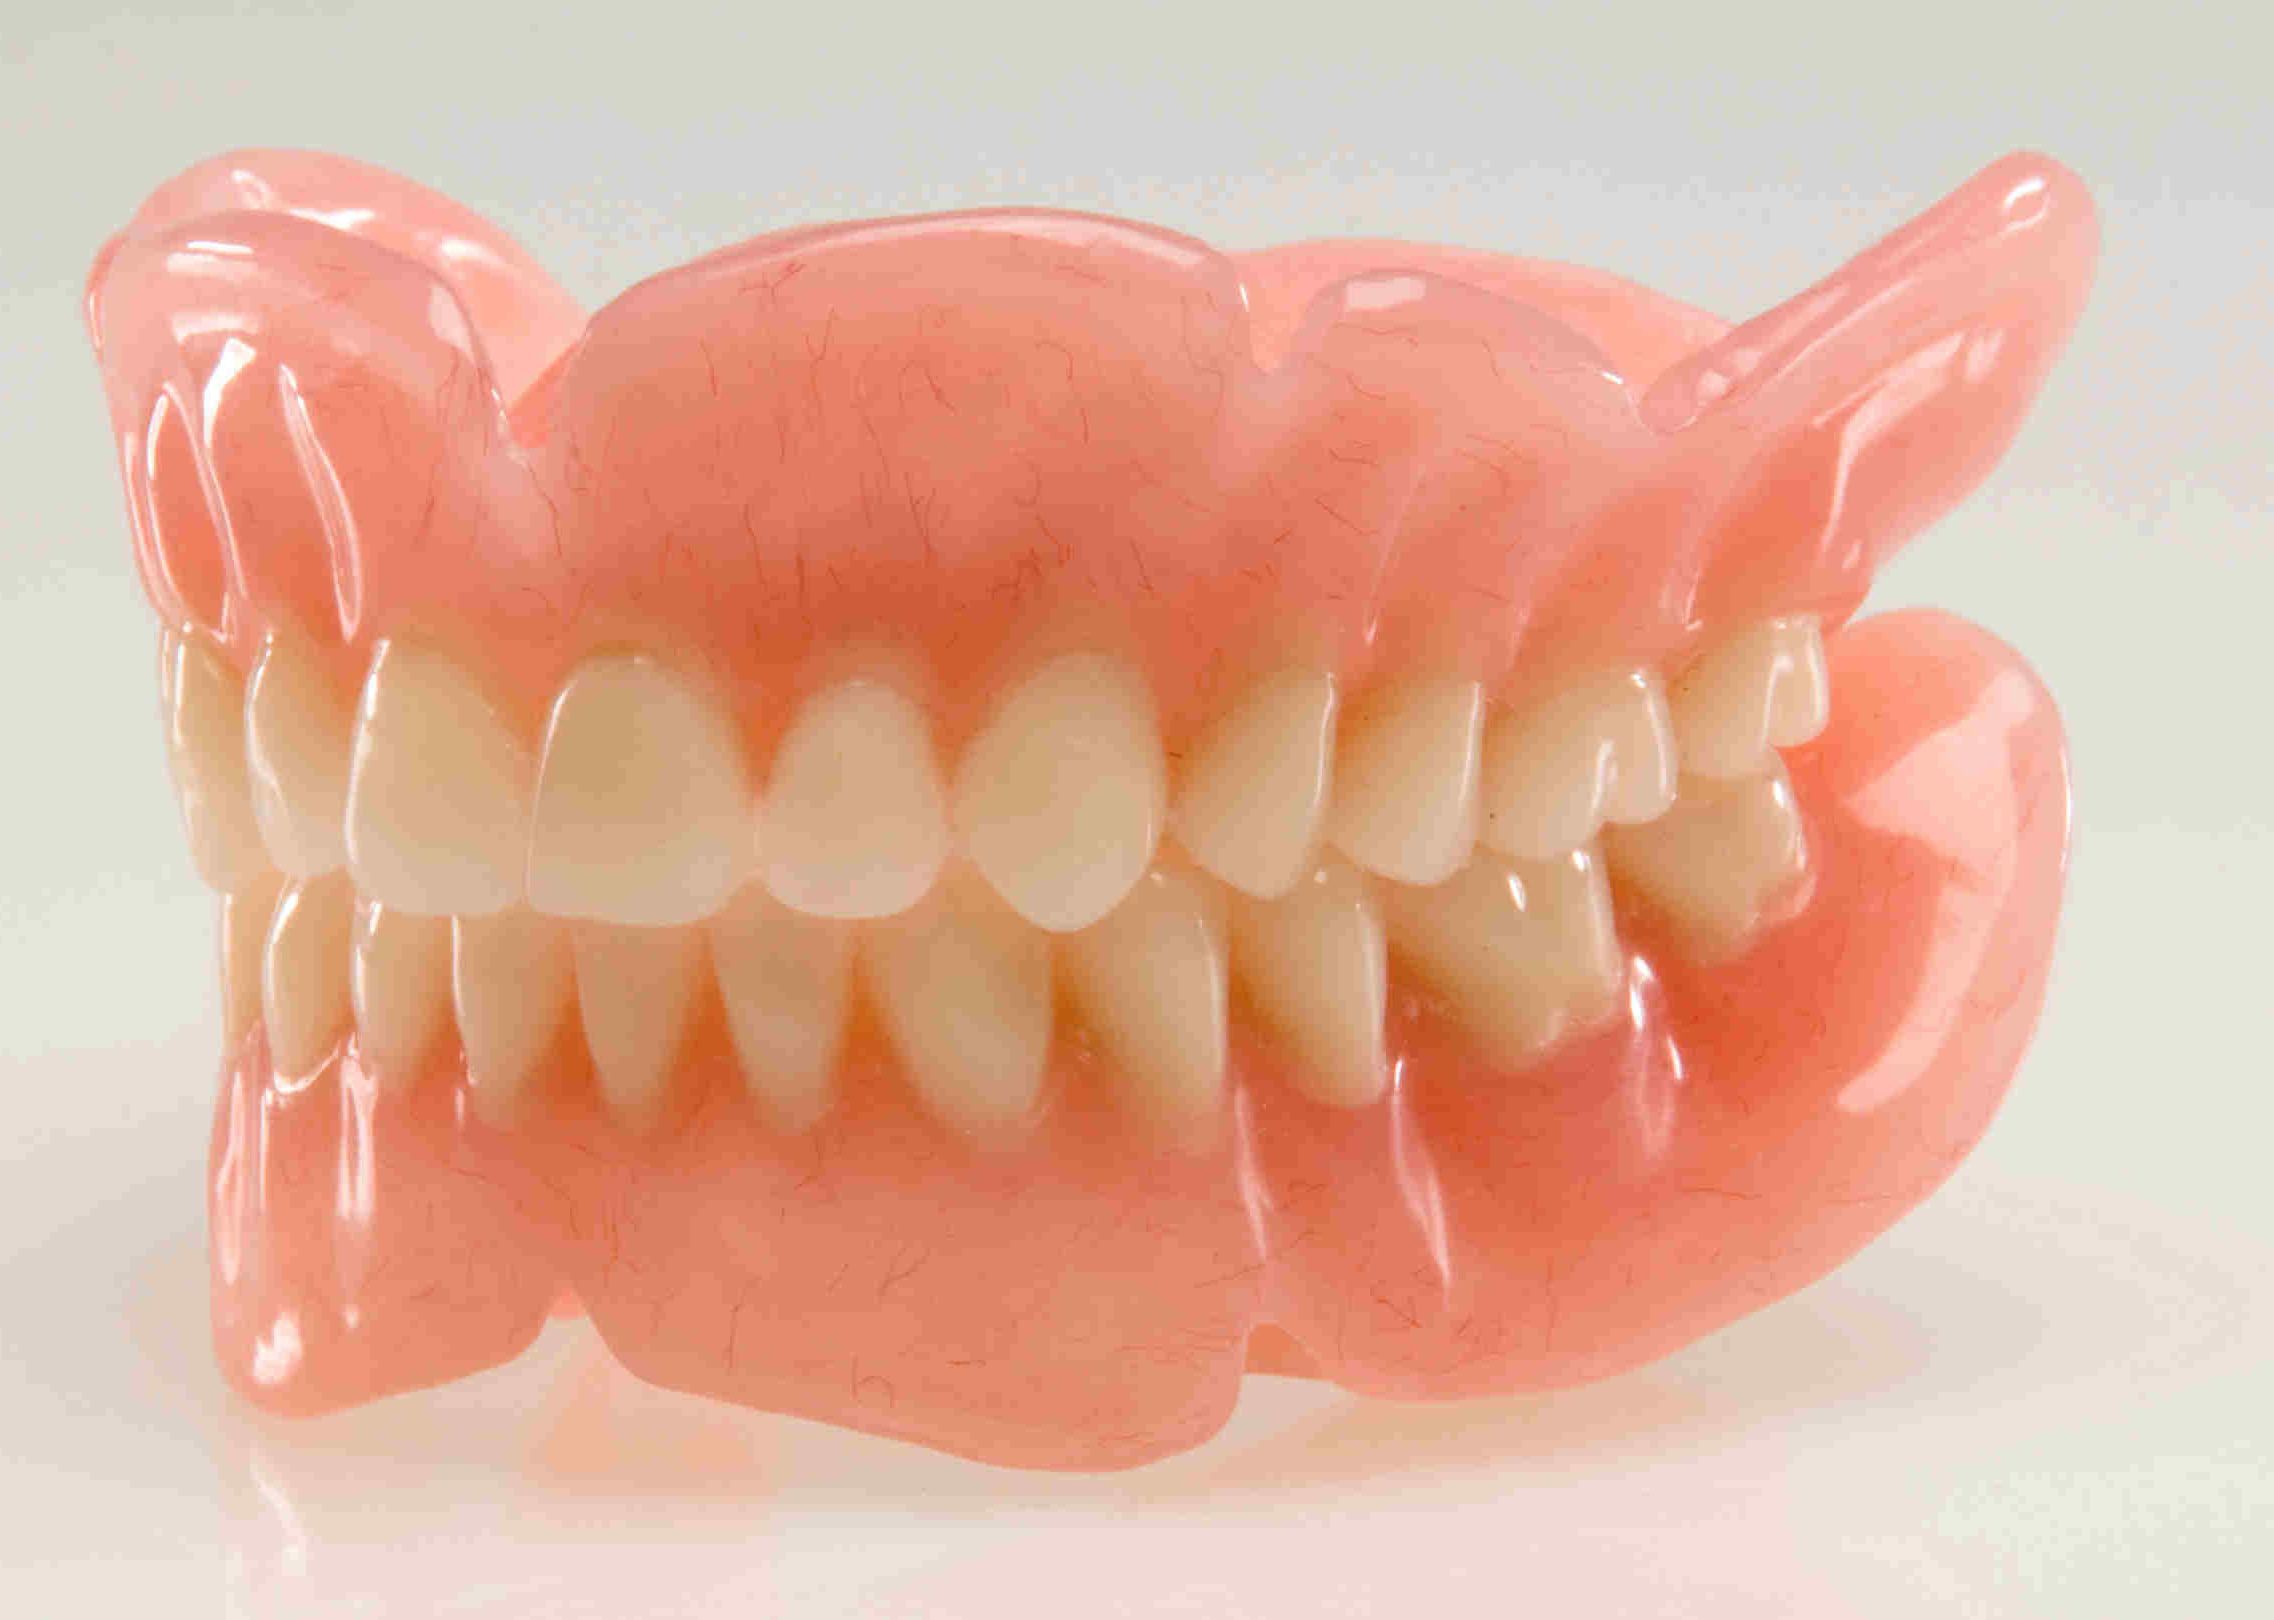 Особенности зубных протезов на присосках на один и несколько зубов